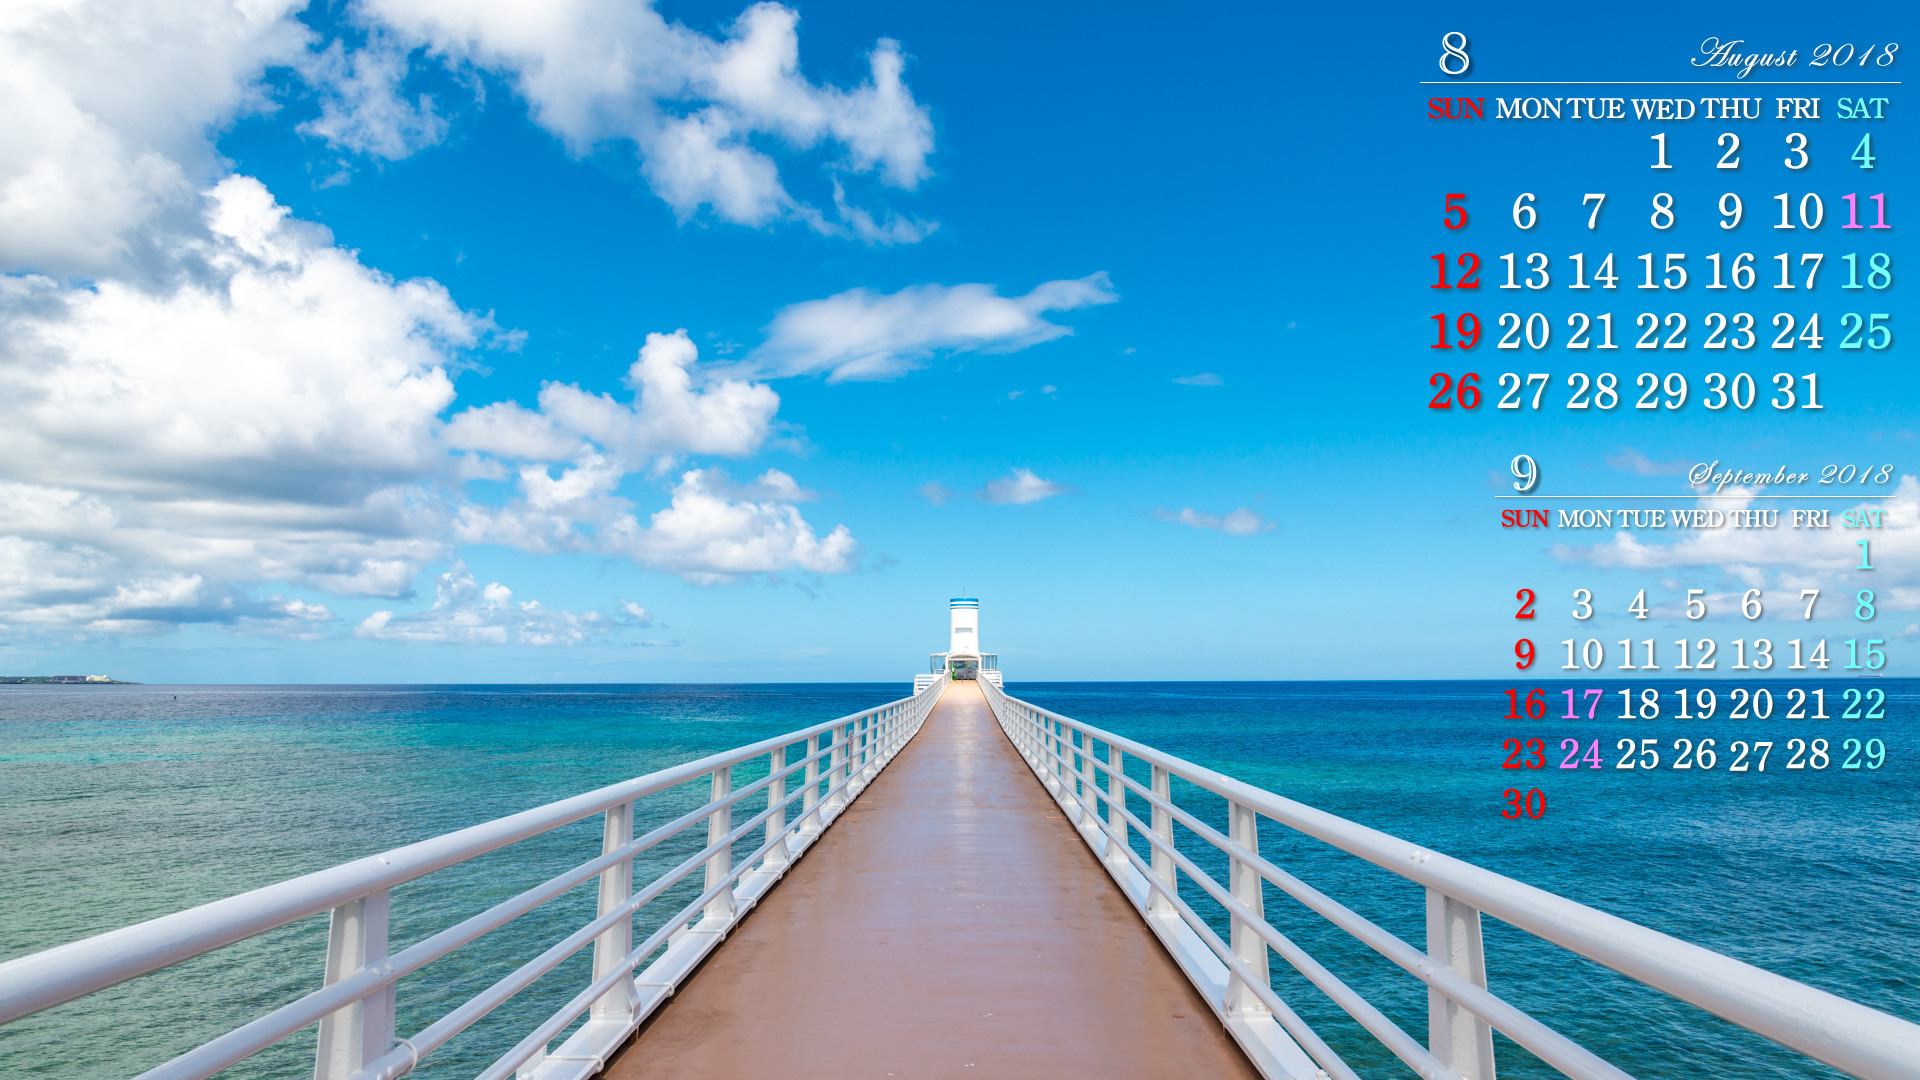 18年8月の自然カレンダー壁紙 ブセナ海中展望塔 無料ワイド高画質壁紙館